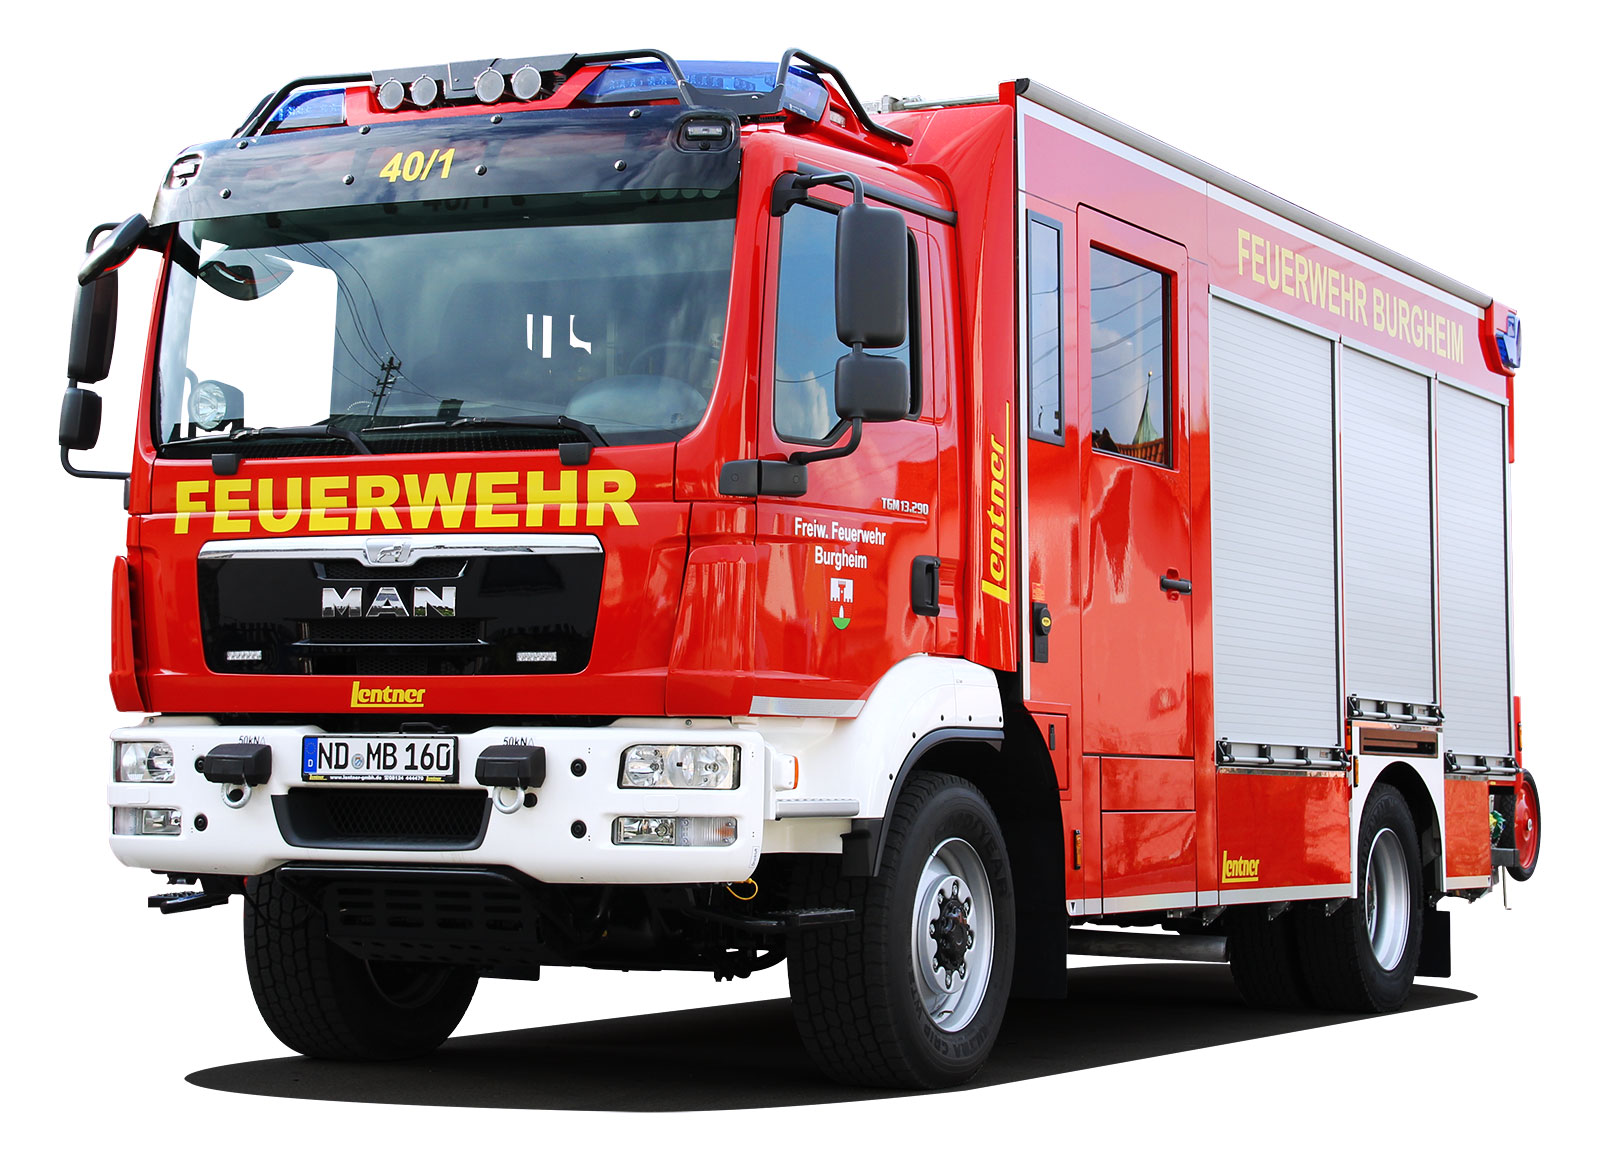 HLF20 Feuerwehr Burgheim Florian Burgheim 40/1